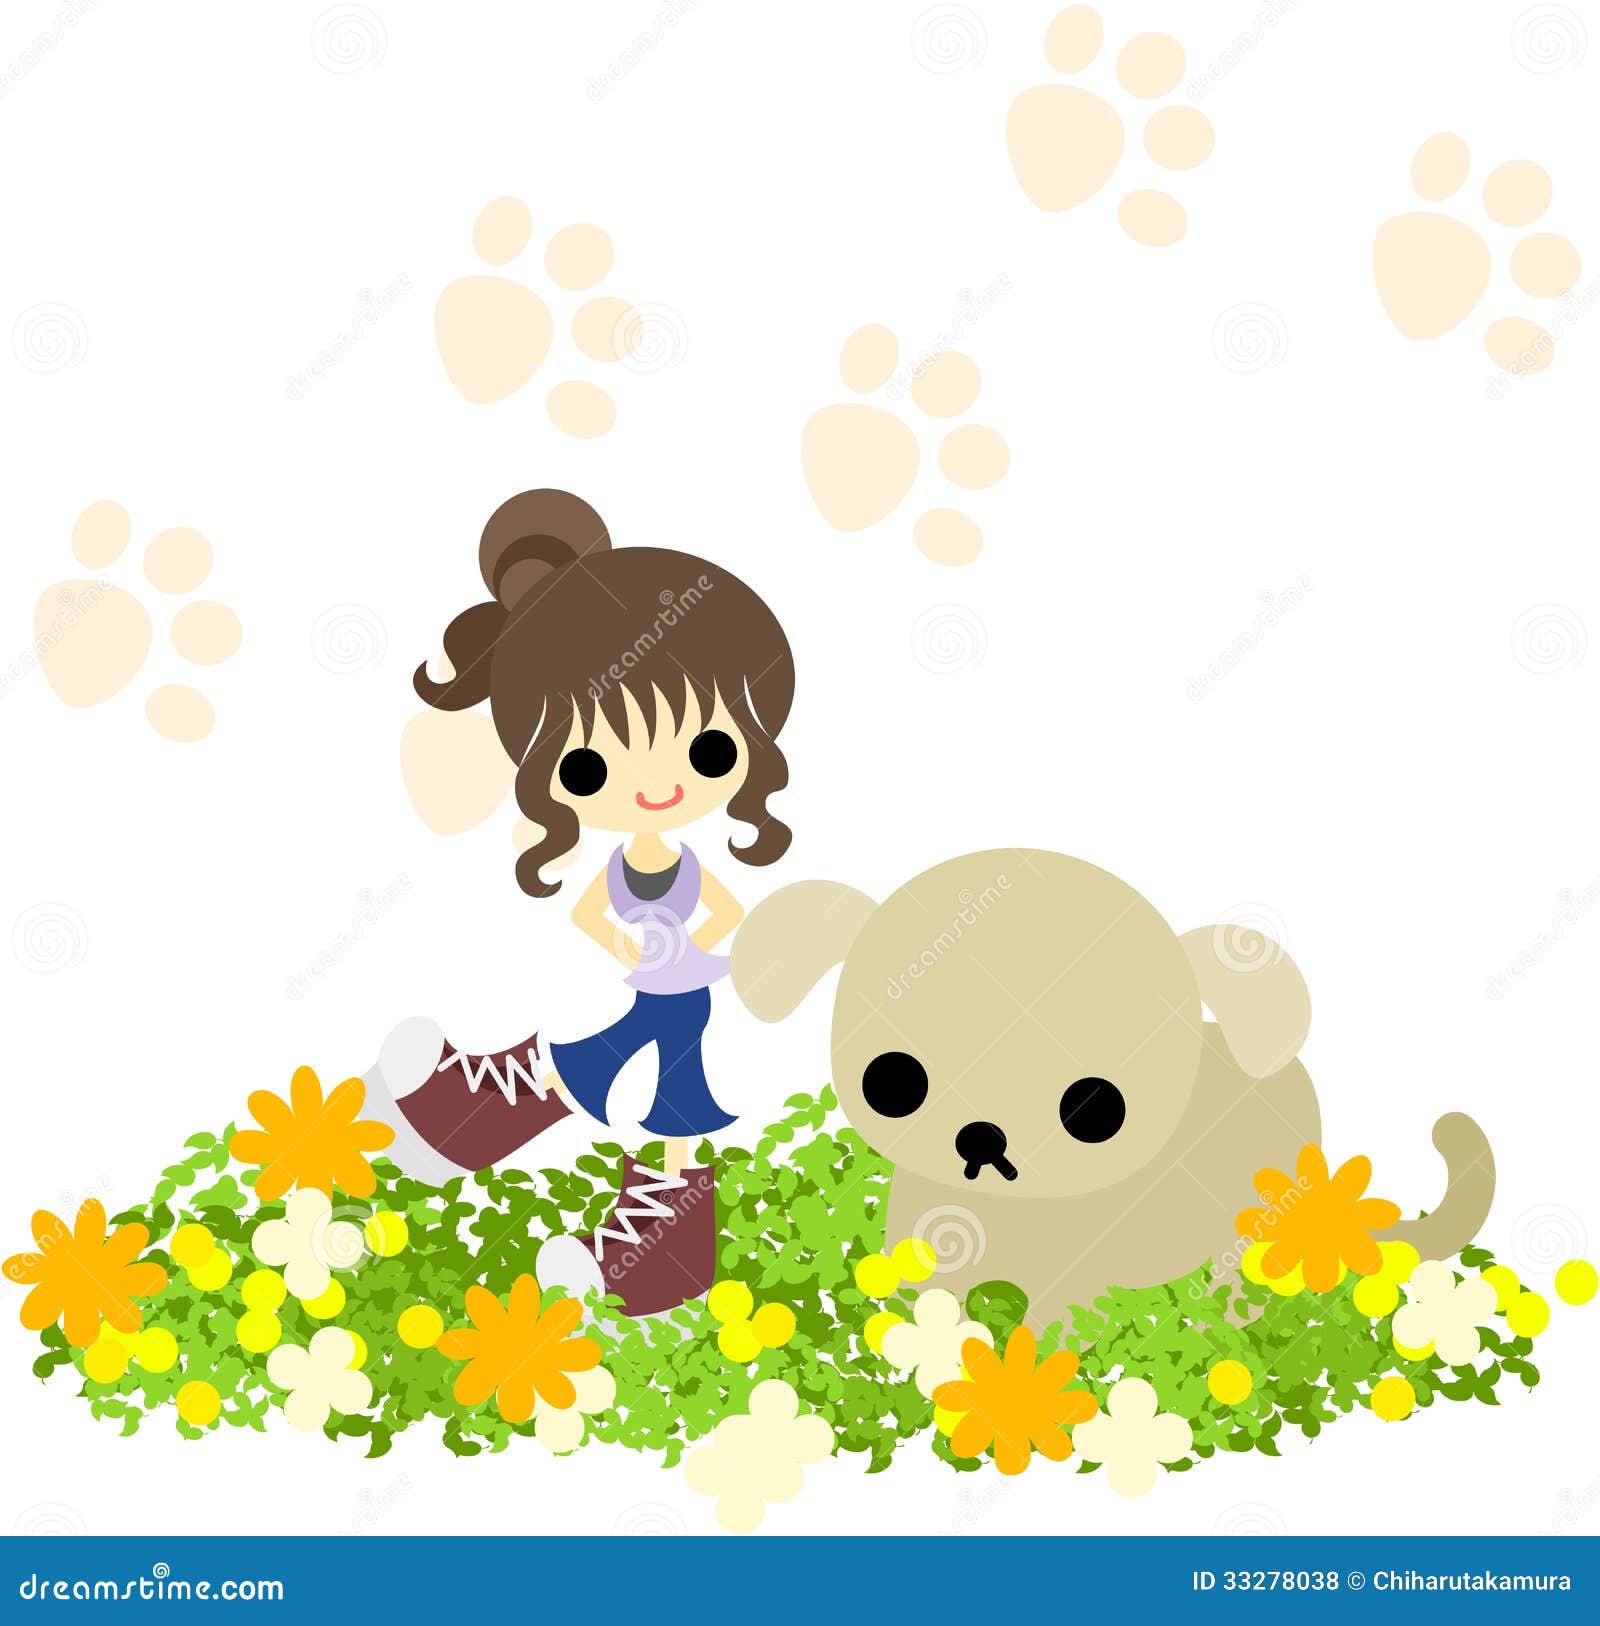 a chignon girl with a dog